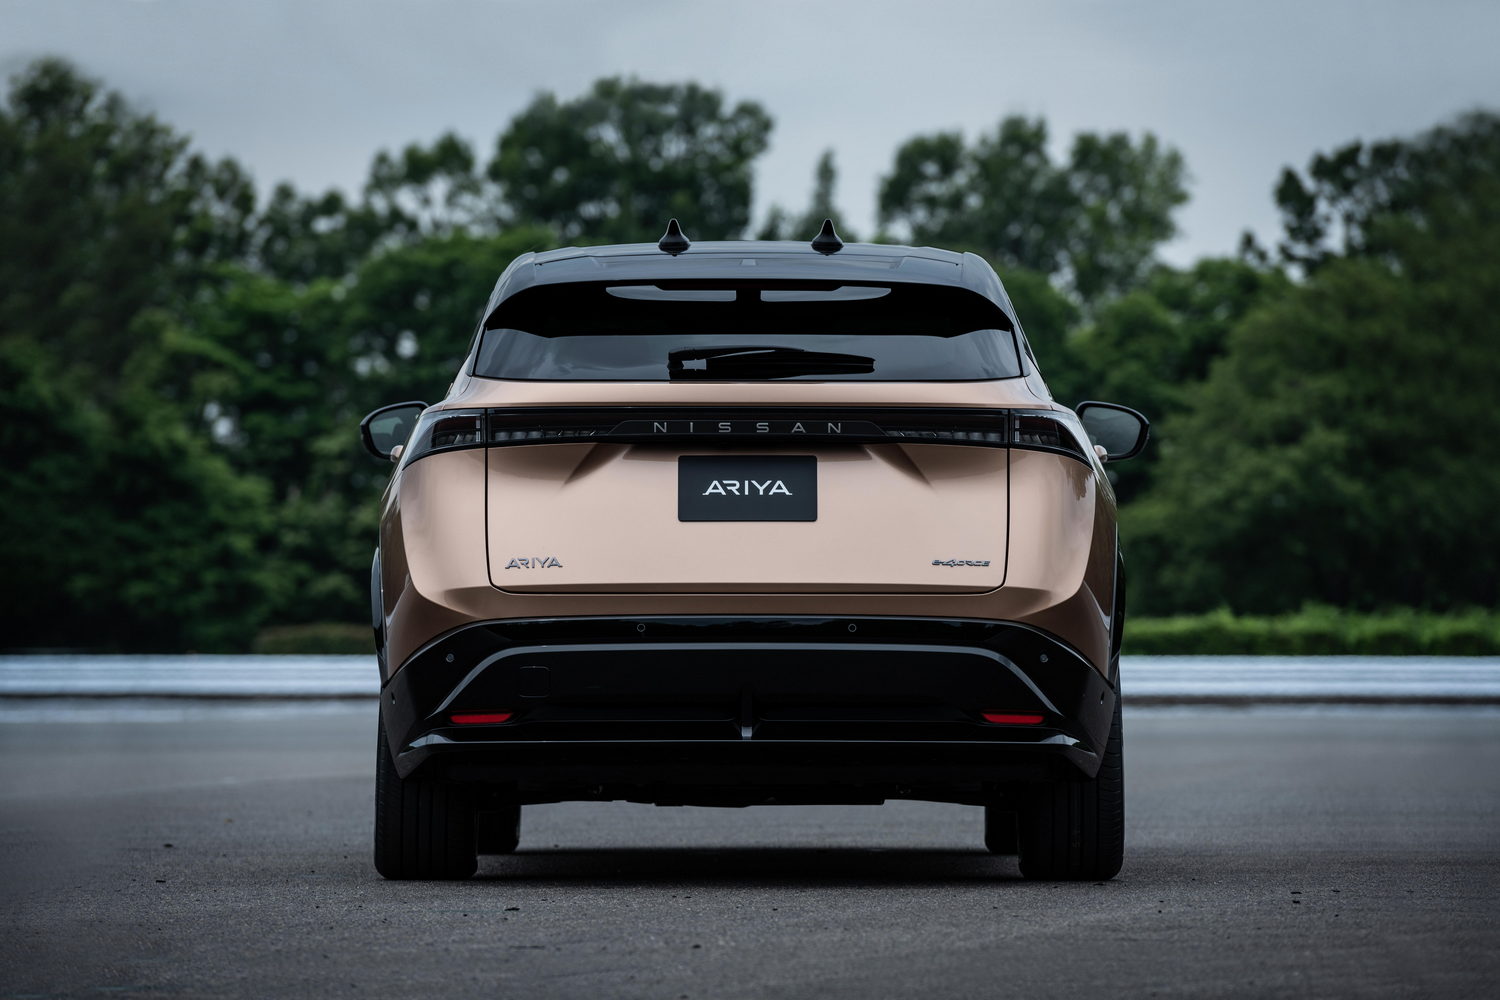 Nissan Ariya 63kWh (2022 prototype)